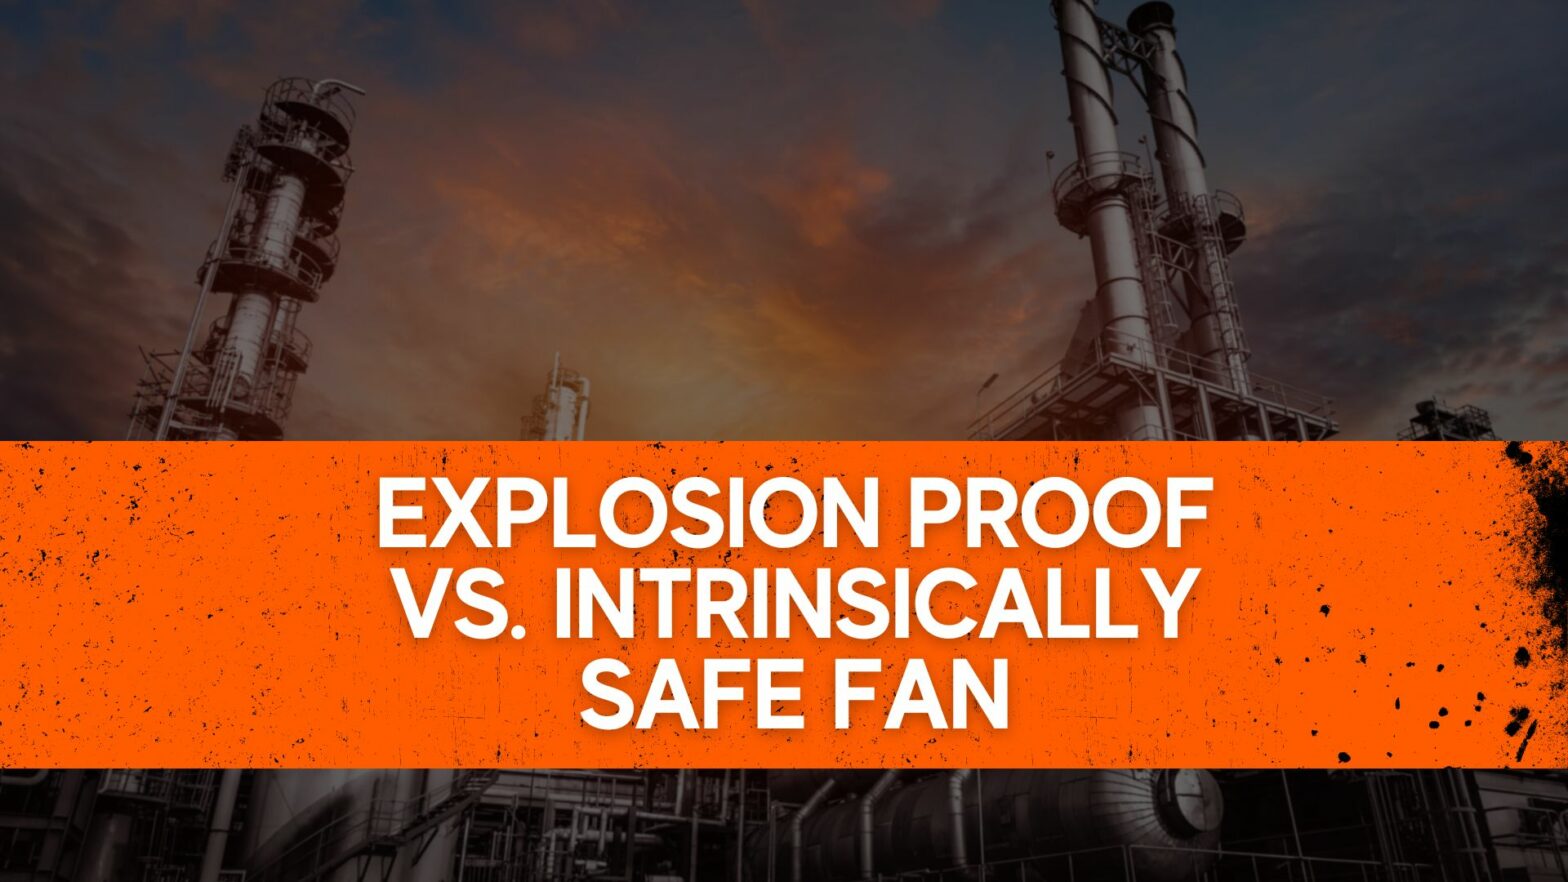 Explosion Proof vs. Intrinsically Safe Fan